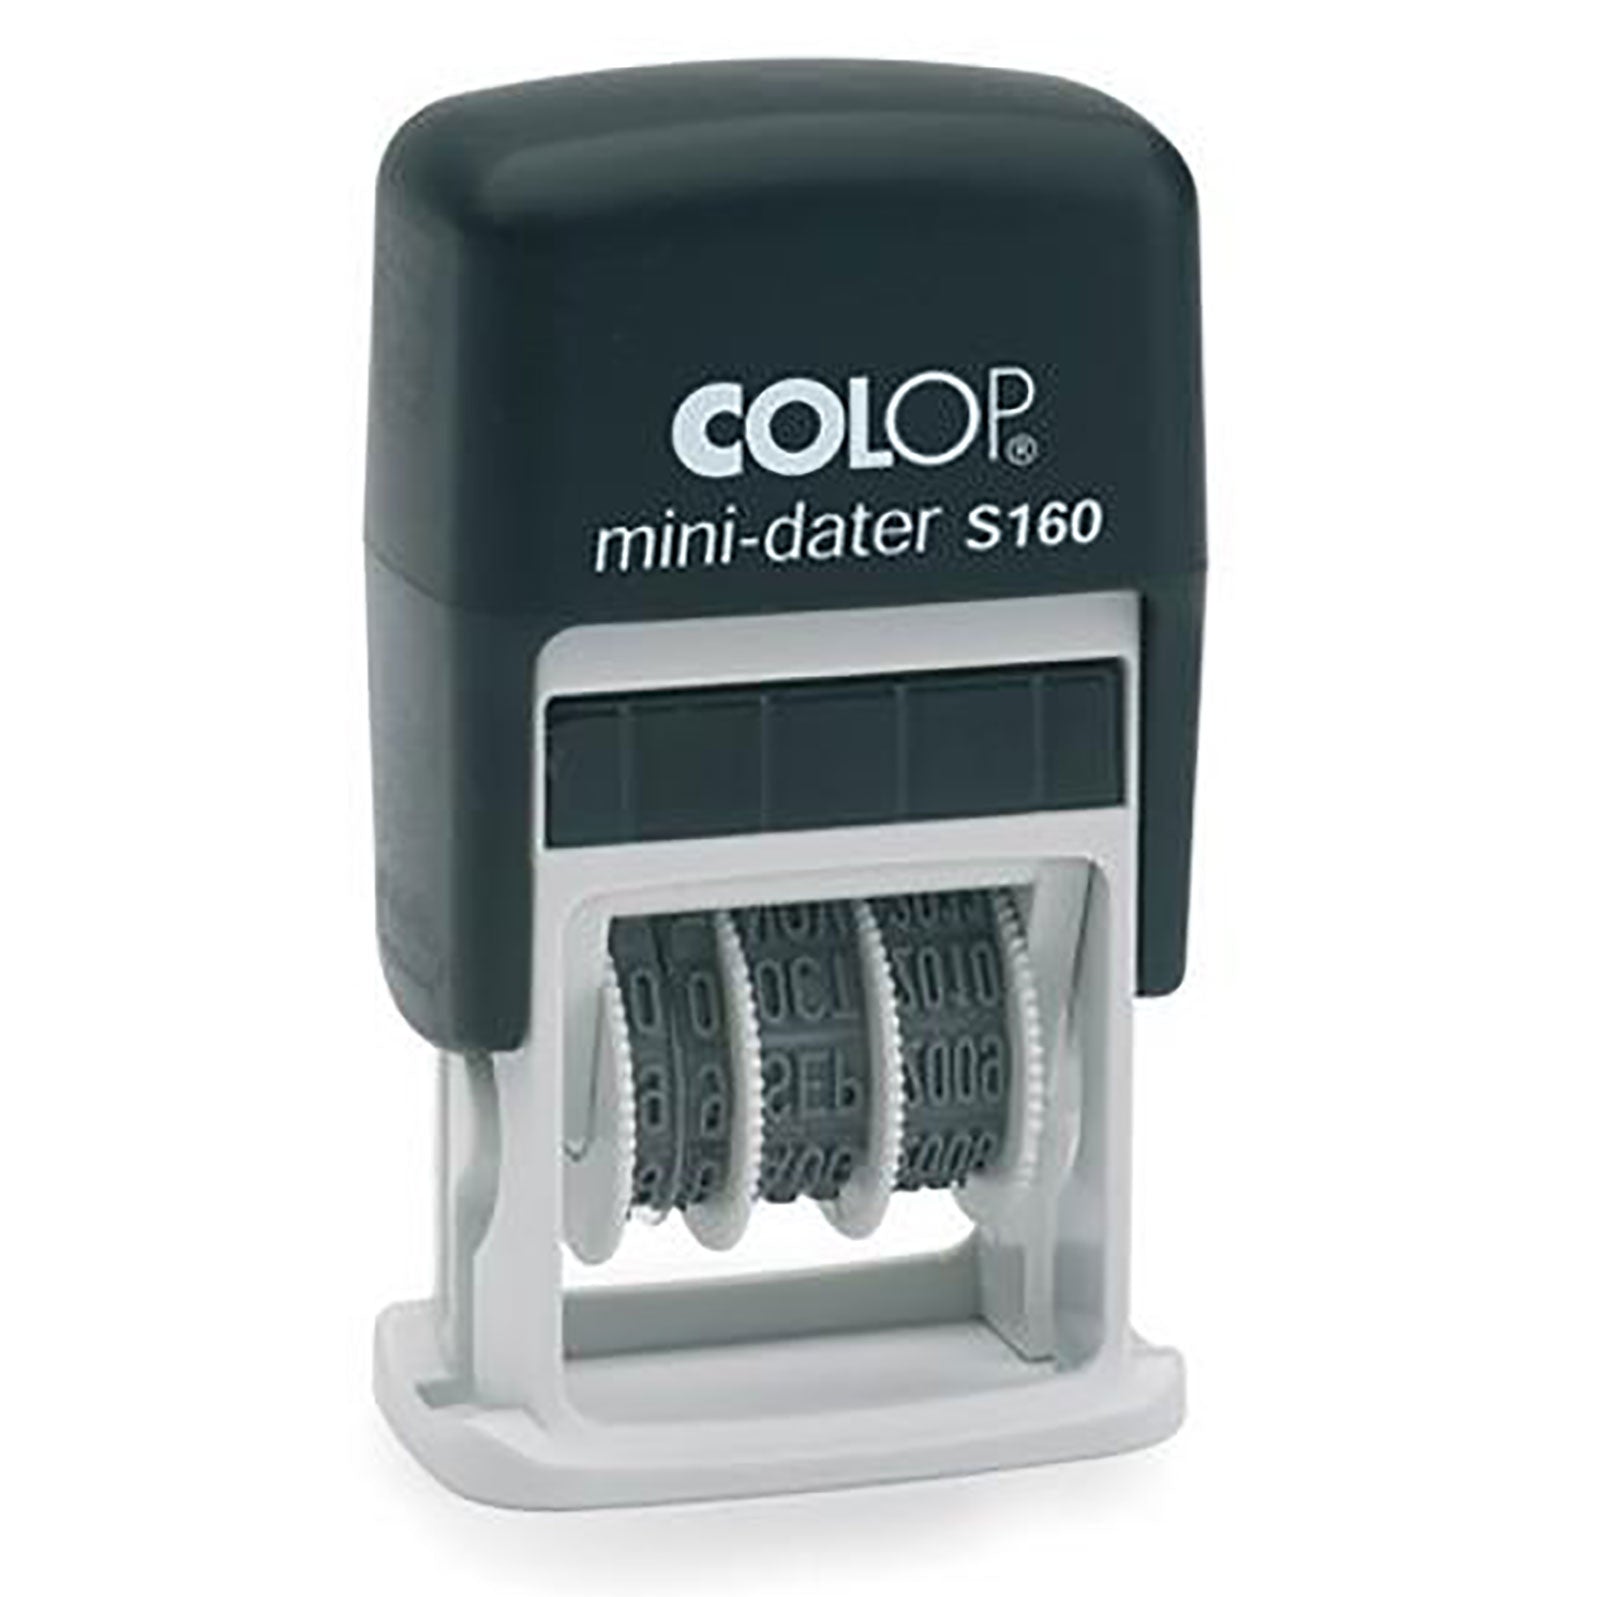 Colop Printer Mini Dater S160 25 x 12mm - 4mm Date